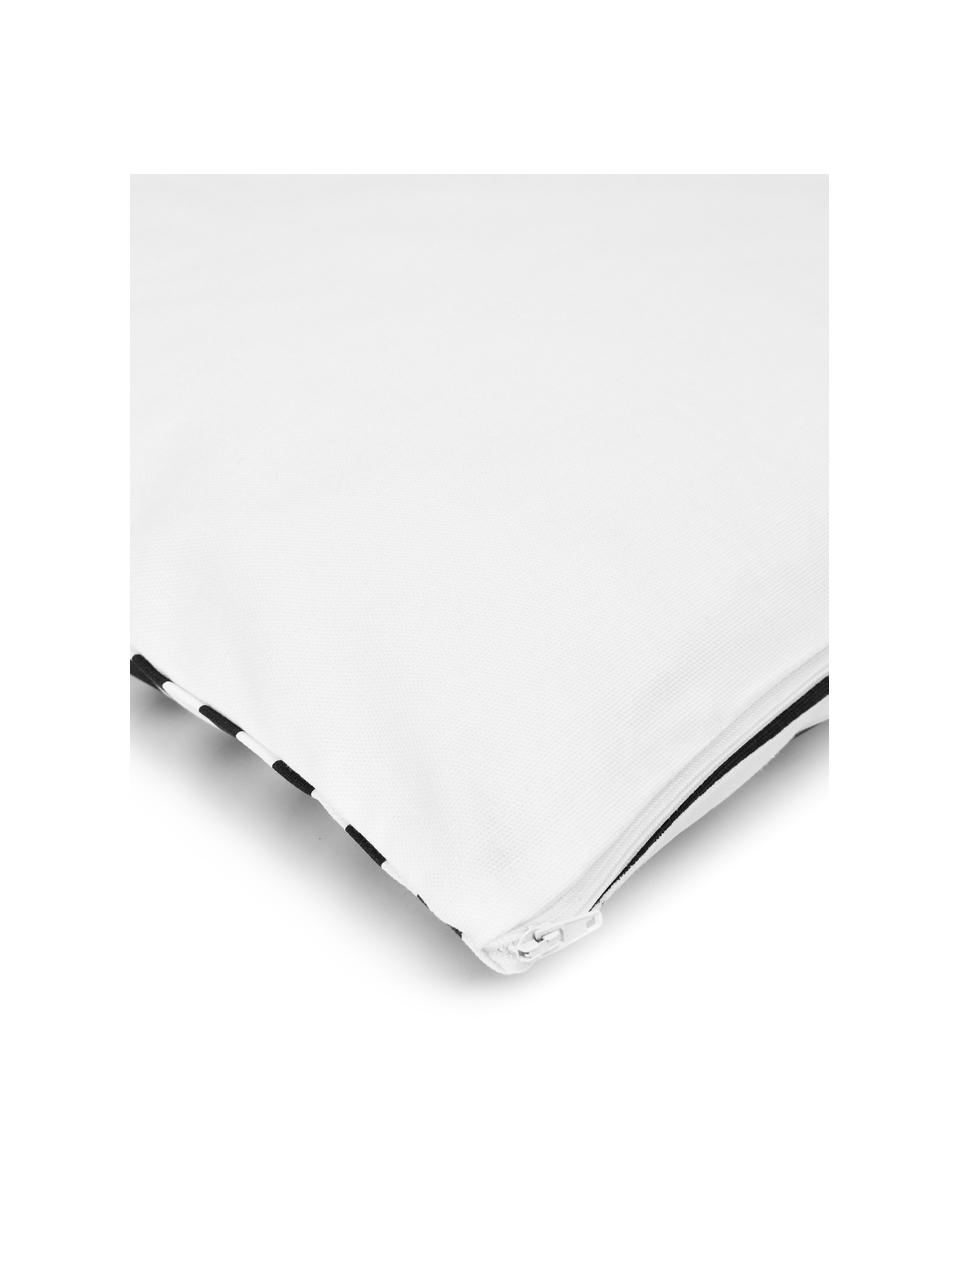 Kissenhülle Ivo in Schwarz/Weiß mit grafischem Muster, 100% Baumwolle, Weiß,Schwarz, 45 x 45 cm